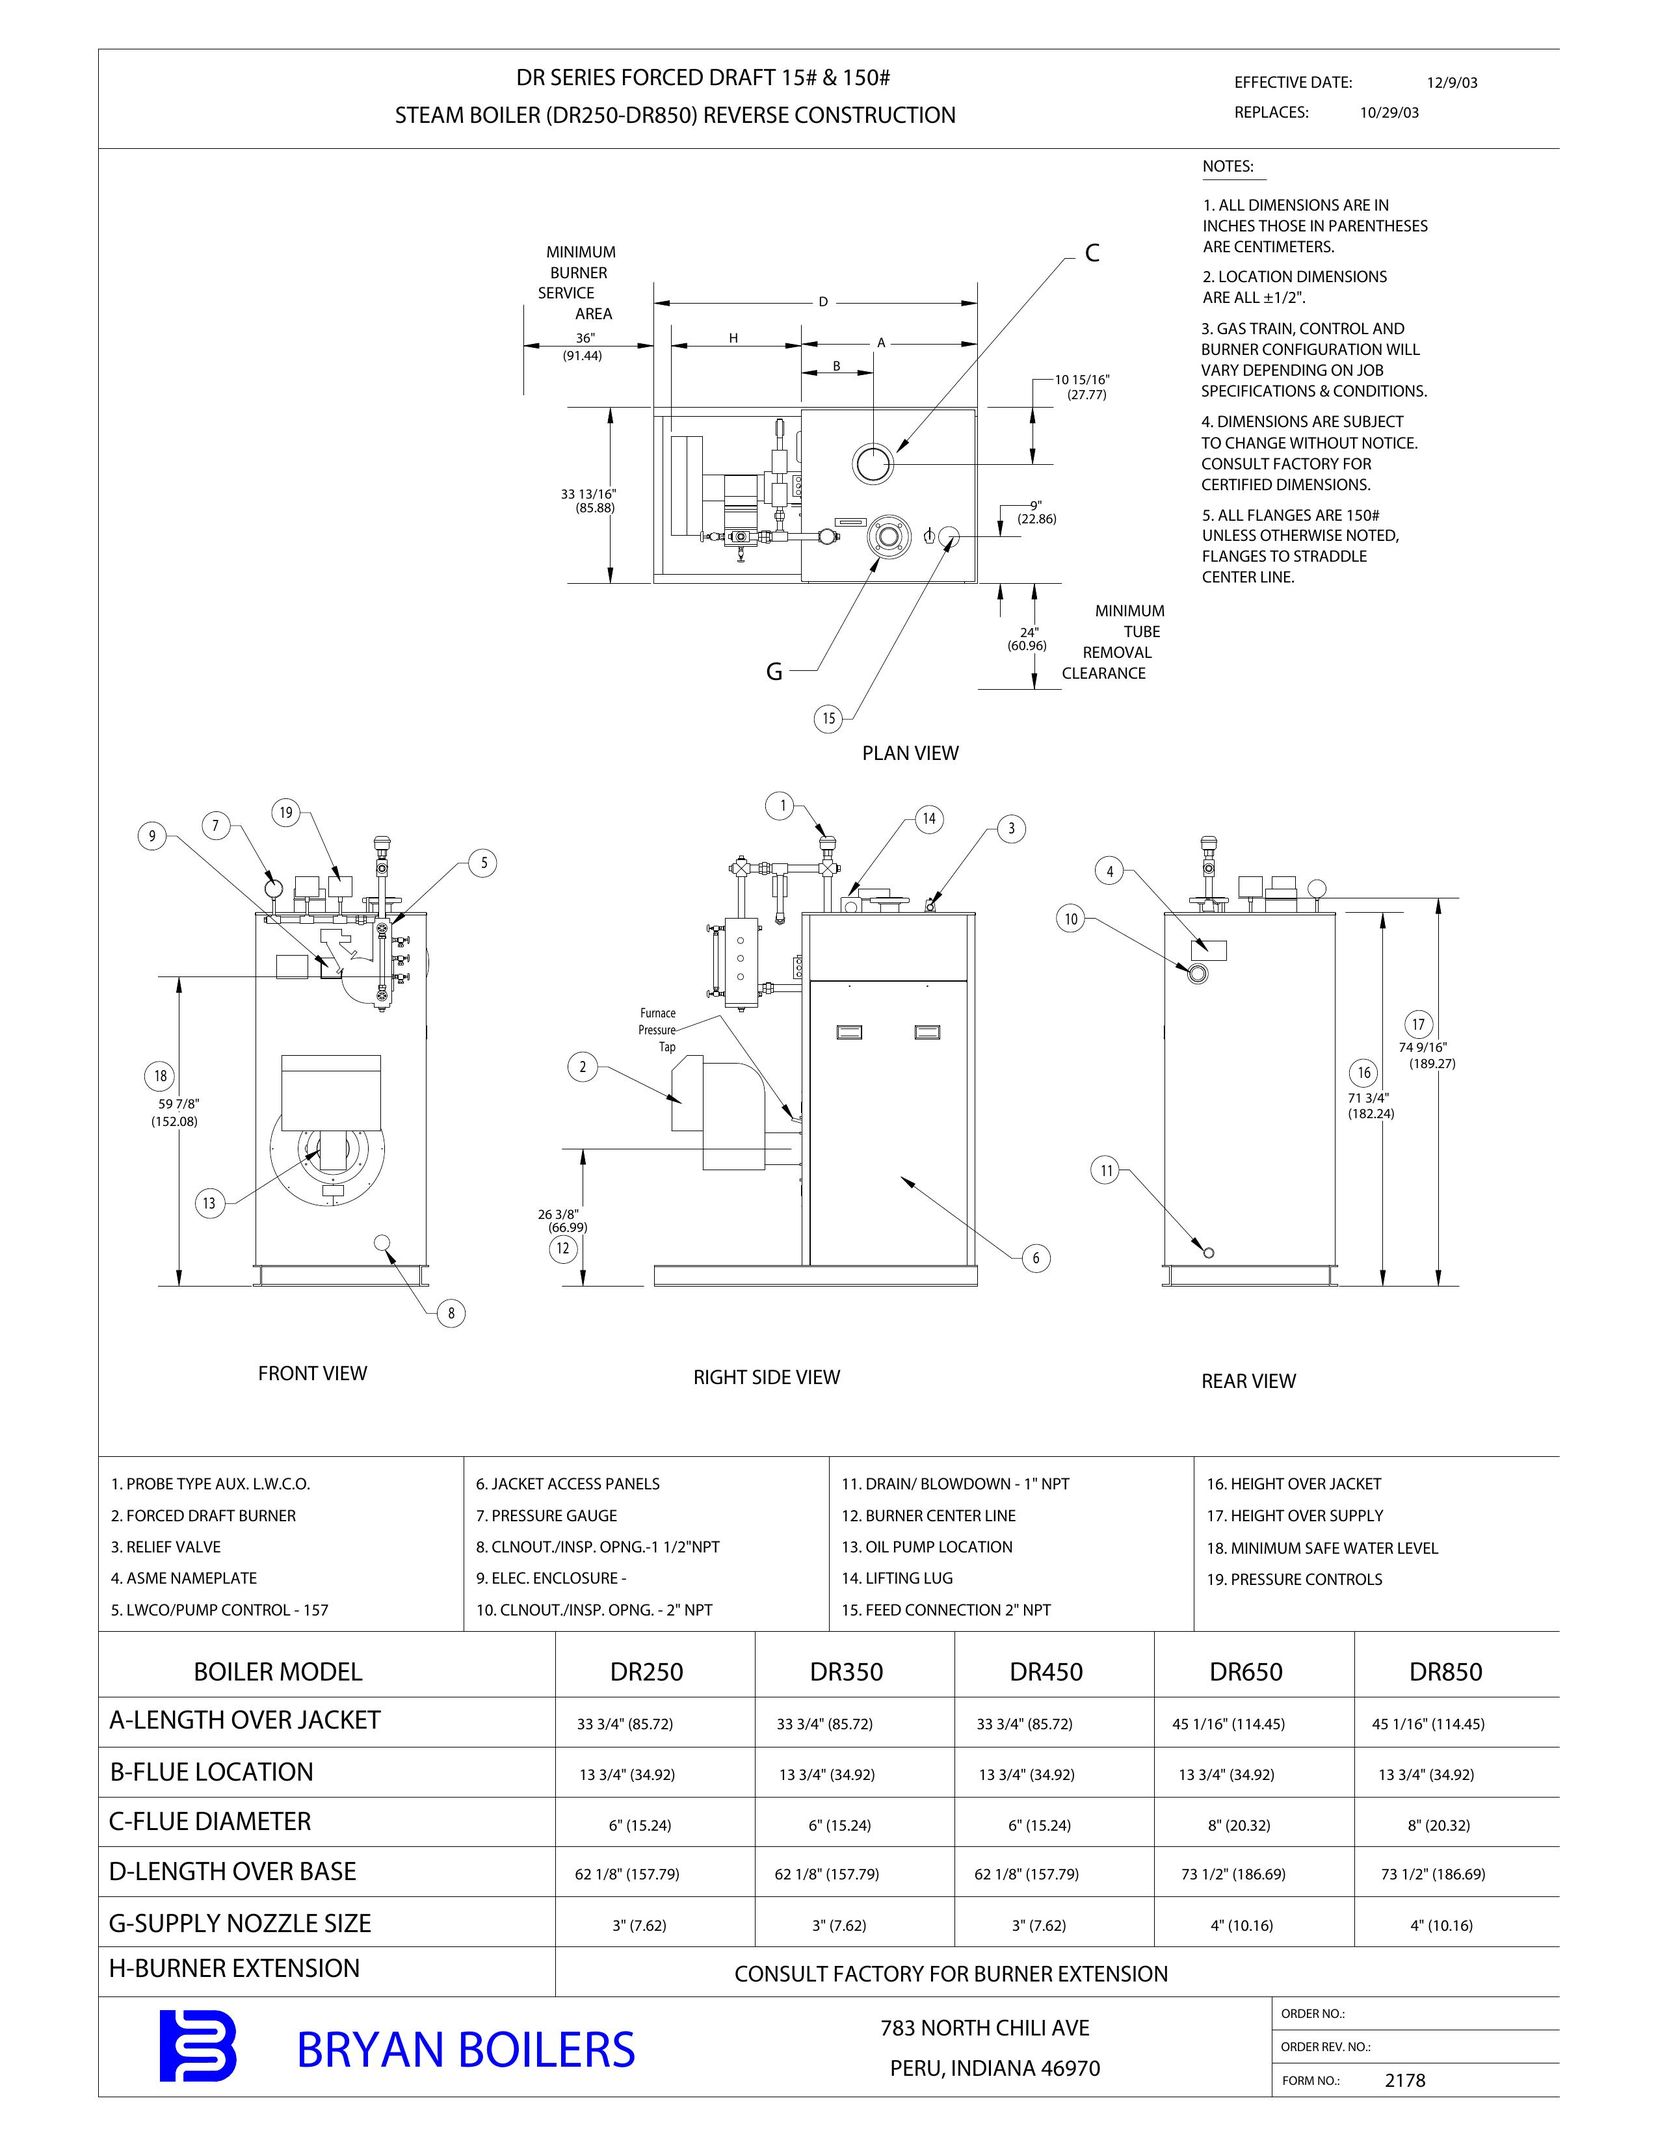 Bryan Boilers DR250 Boiler User Manual